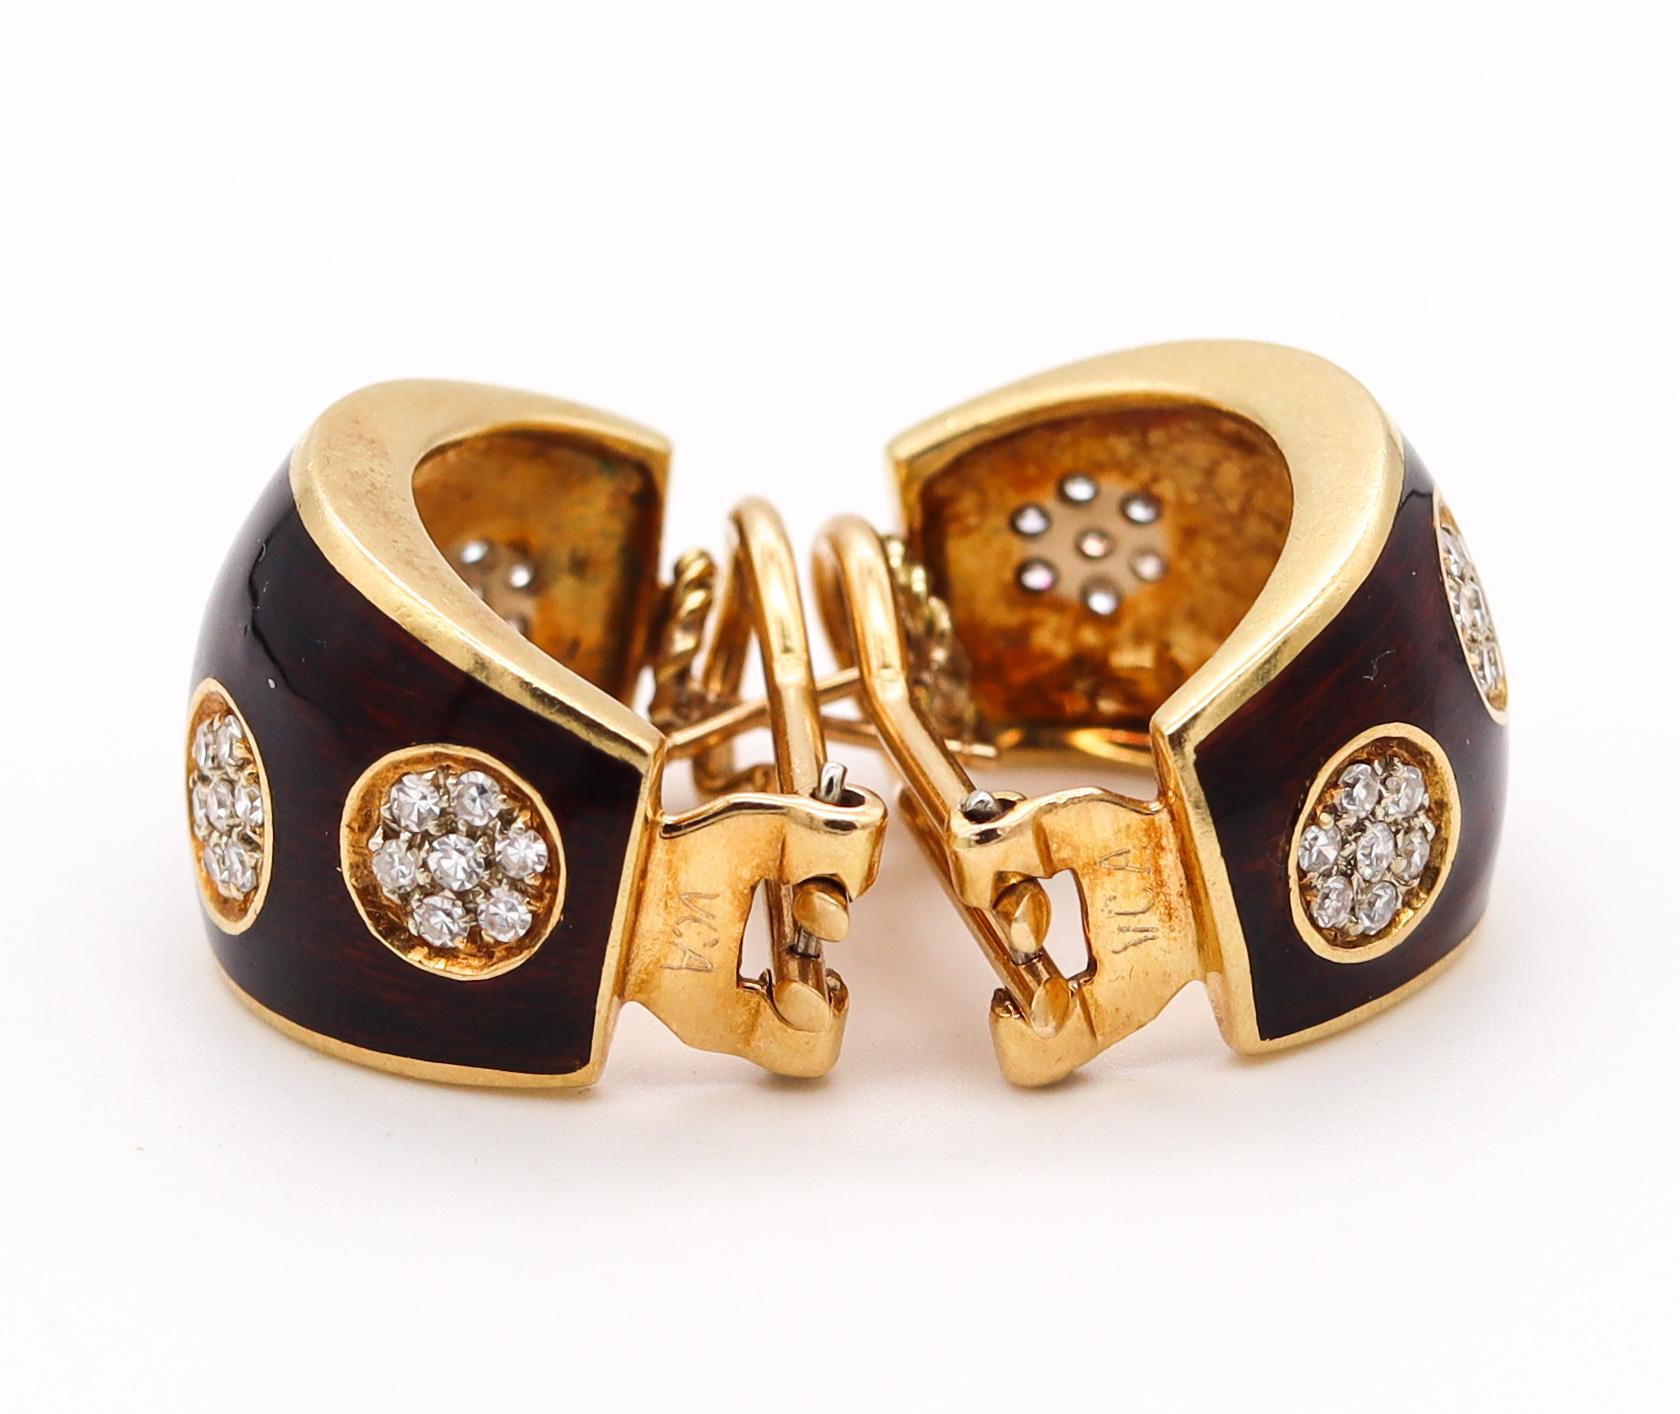 Modernist Van Cleef & Arpels 1970 Vintage Enameled Earrings in 18Kt Gold 1.12 Cts Diamonds